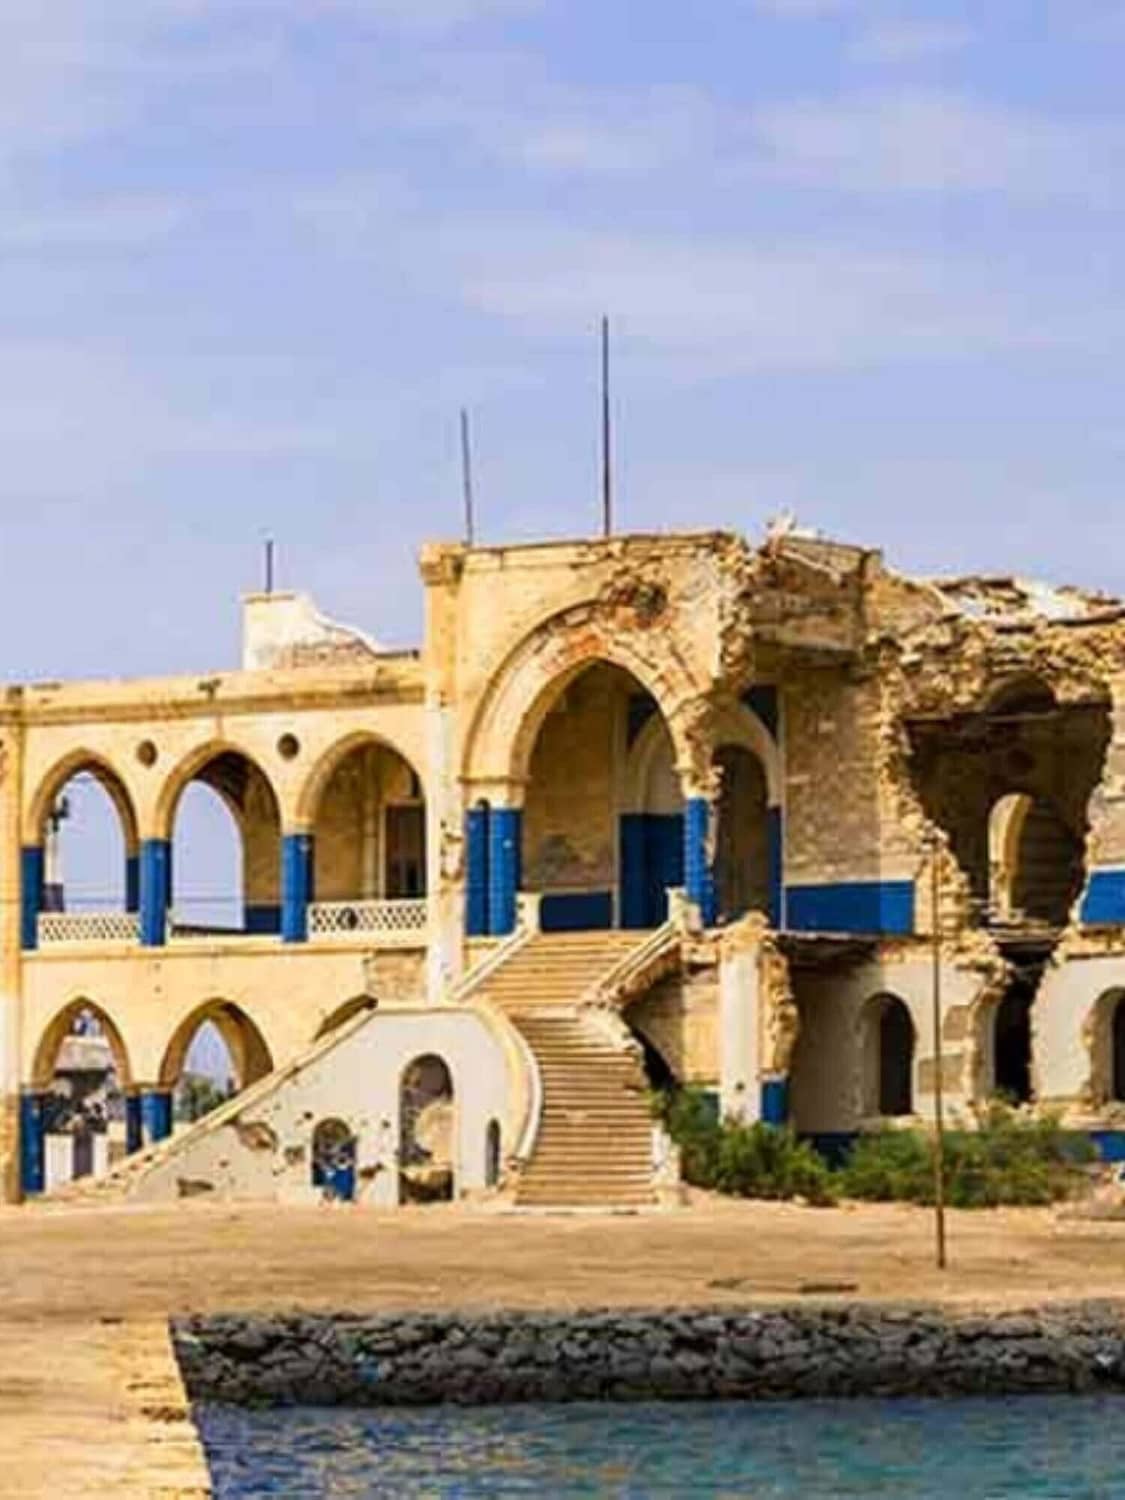 Massawa old city